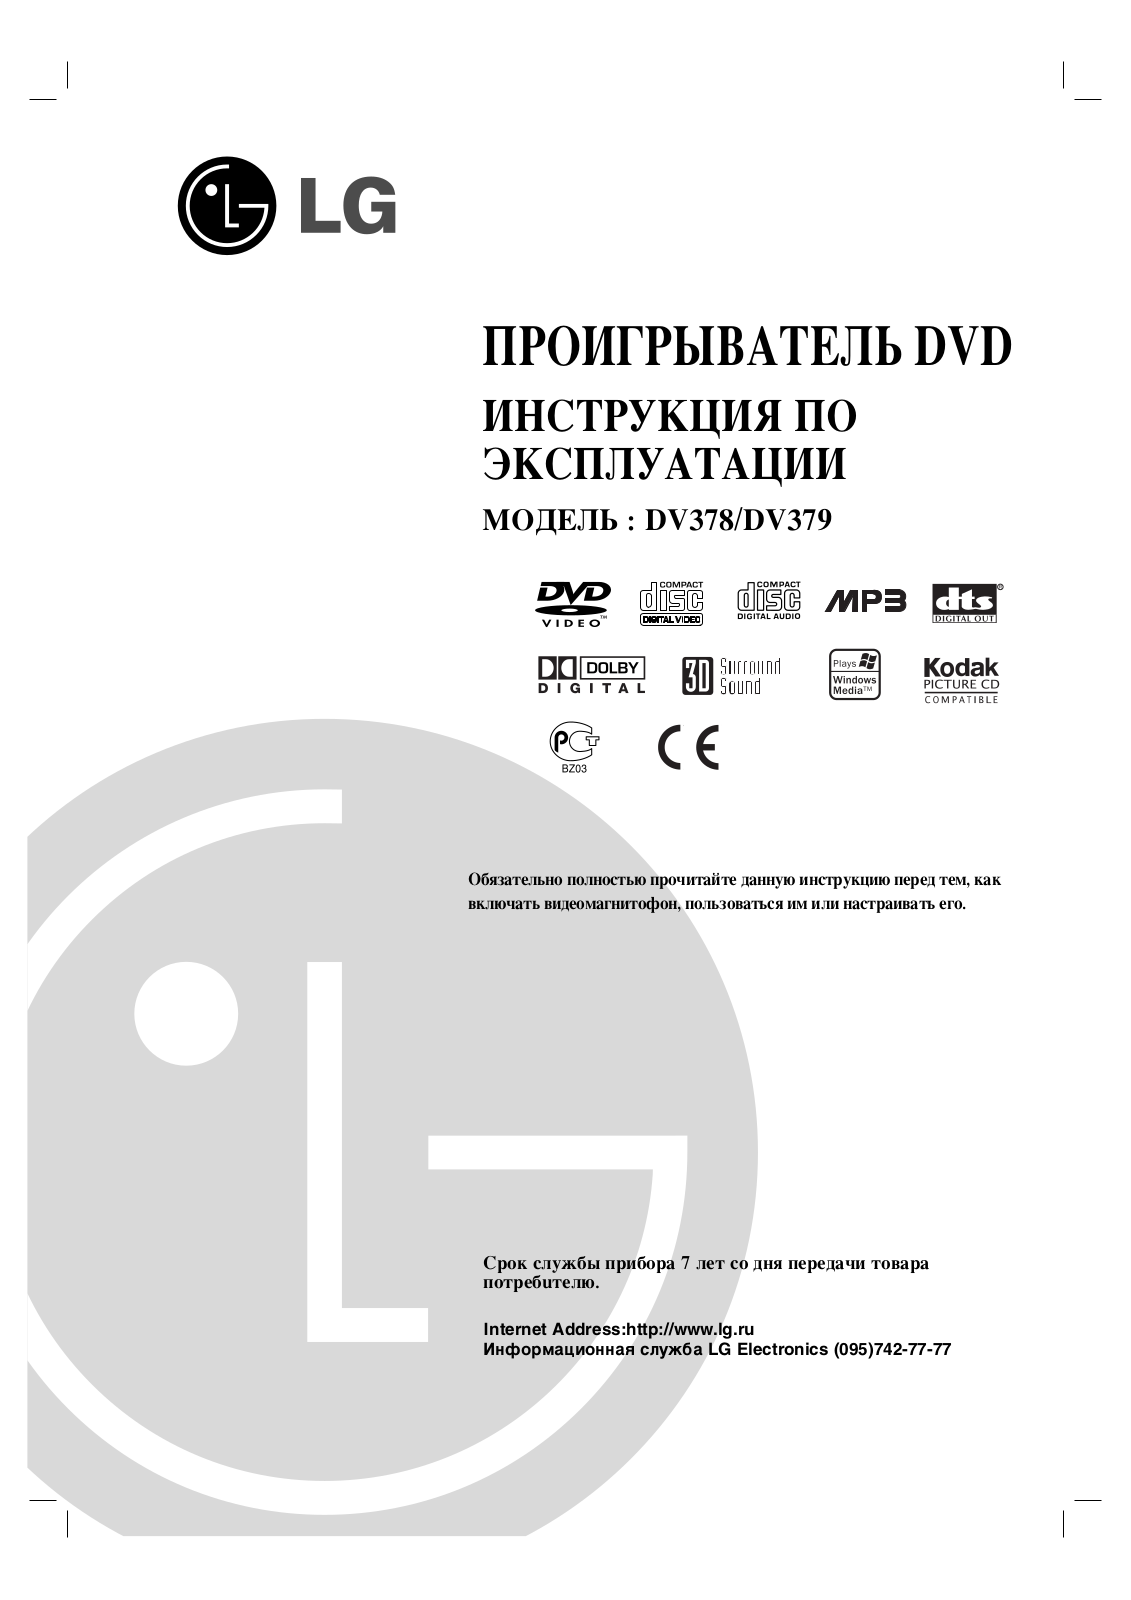 LG DC379 User Manual